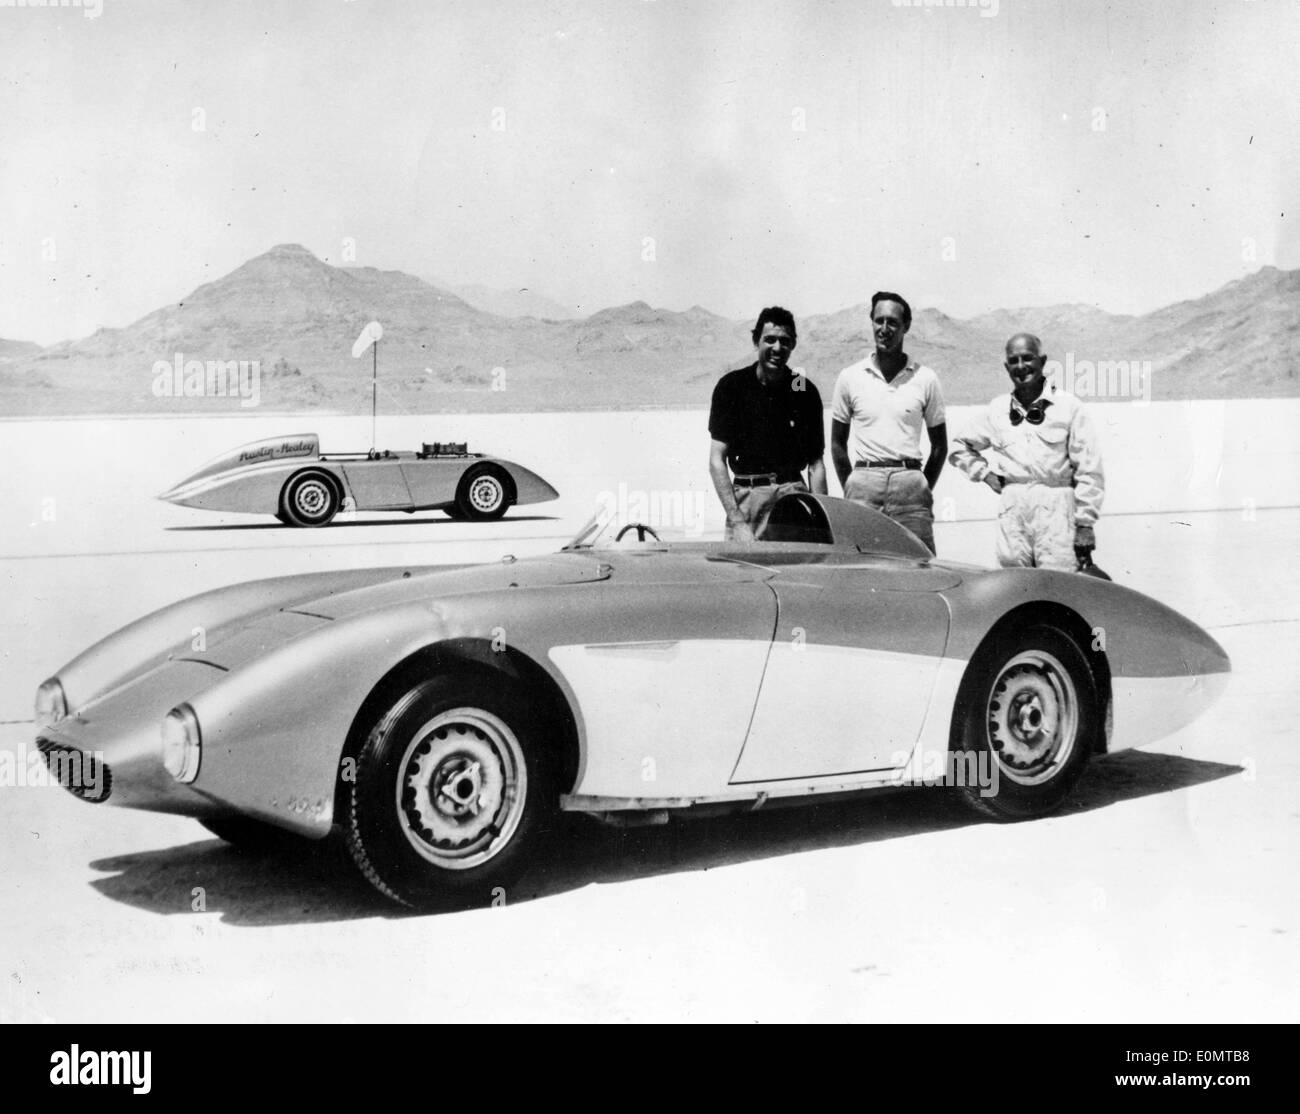 Datei Foto - CARROLL SHELBY (11. Januar 1923-10, Mai 2012), eine der größten Legenden in der Automobilindustrie und ein Champion-Auto-Rennfahrer, der berühmt-berüchtigten Shelby Cobra Sportwagen gebaut und dazu beigetragen, die Ford zu verwandeln ist Mustang und Chrysler Viper, in einem Texas-Krankenhaus gestorben. Er wurde 89. Shelby hatte Häuser in Los Angeles und Texas. Shelby wurde 1992 in die Automobile Hall Of Fame aufgenommen. und ist am besten bekannt für seine Karriere in der Automobilindustrie, darunter ein Champion Rennfahrer, ein Racing-Team-Besitzer, ein Automobil-Hersteller und Berater im Automobil. Im Bild: Aug Stockfoto